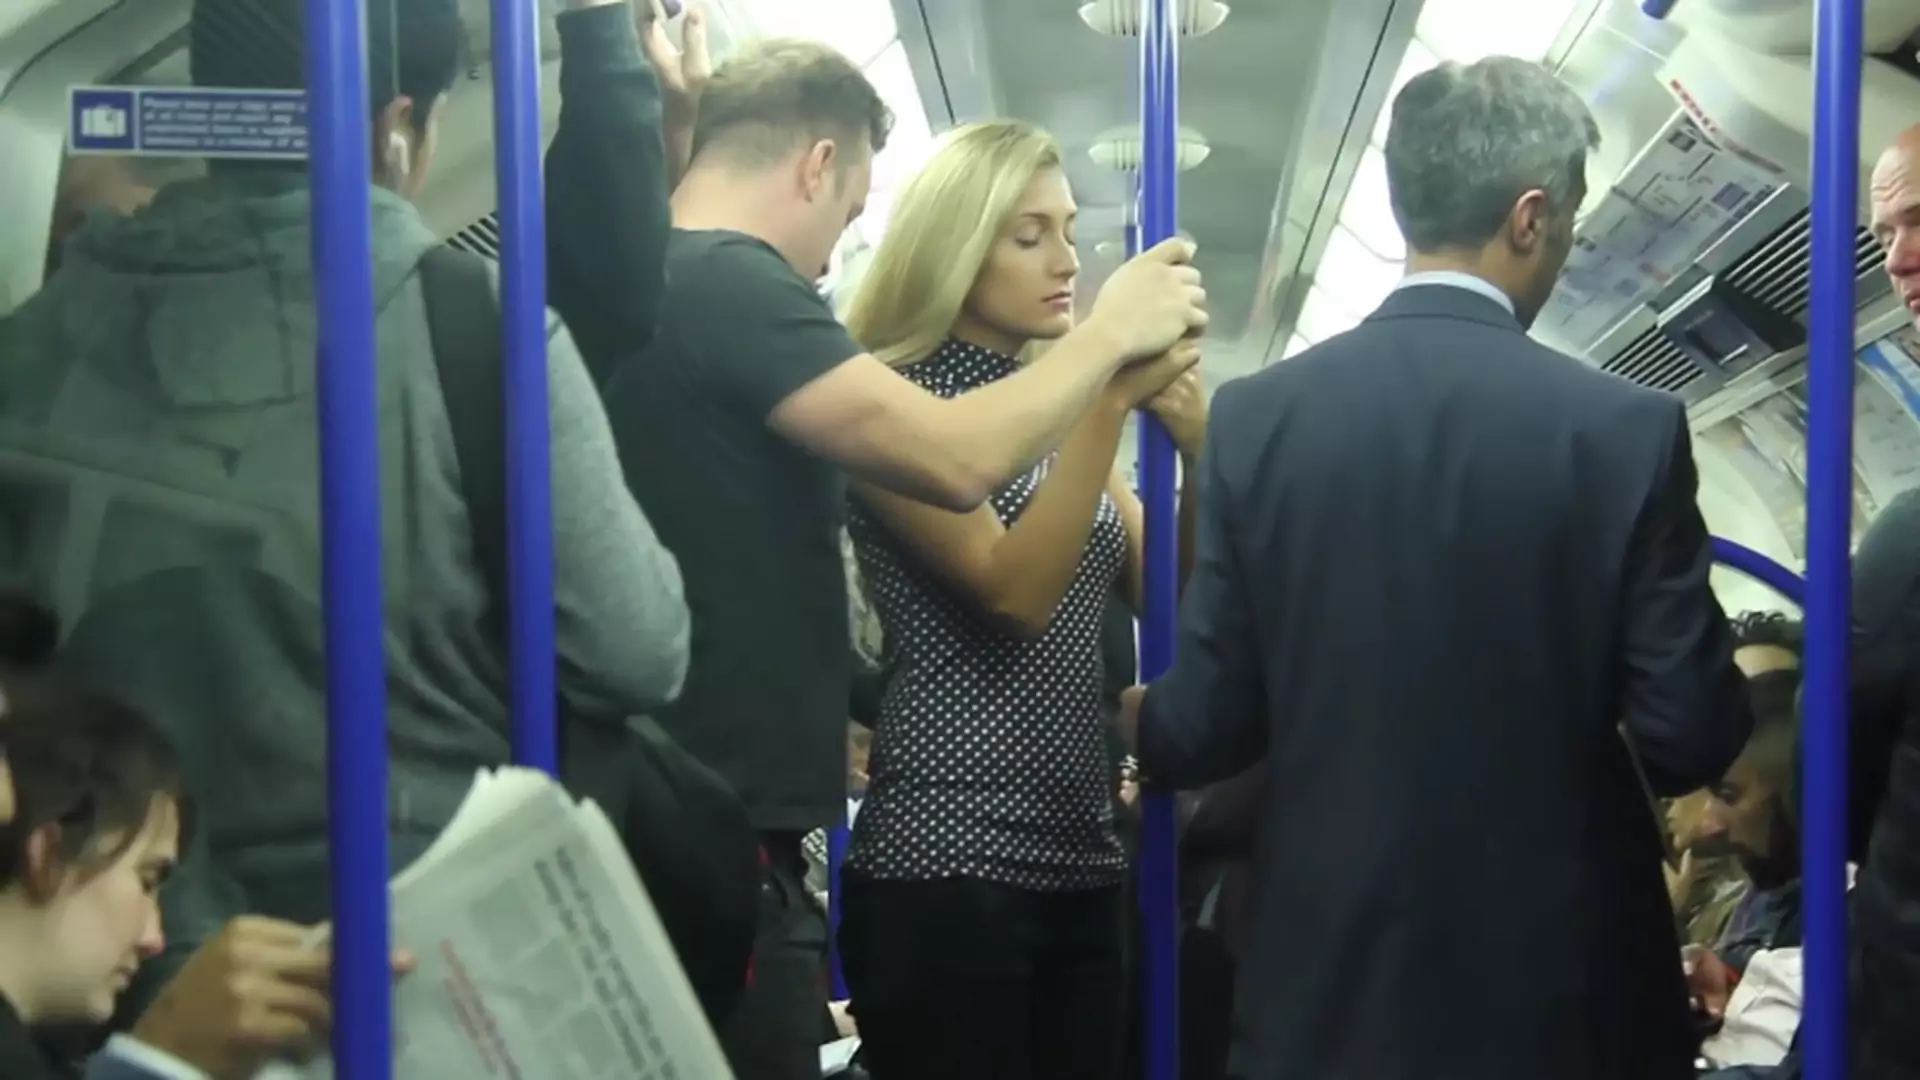 Dobierał się do kobiety w metrze. Jak zareagowali pasażerowie?